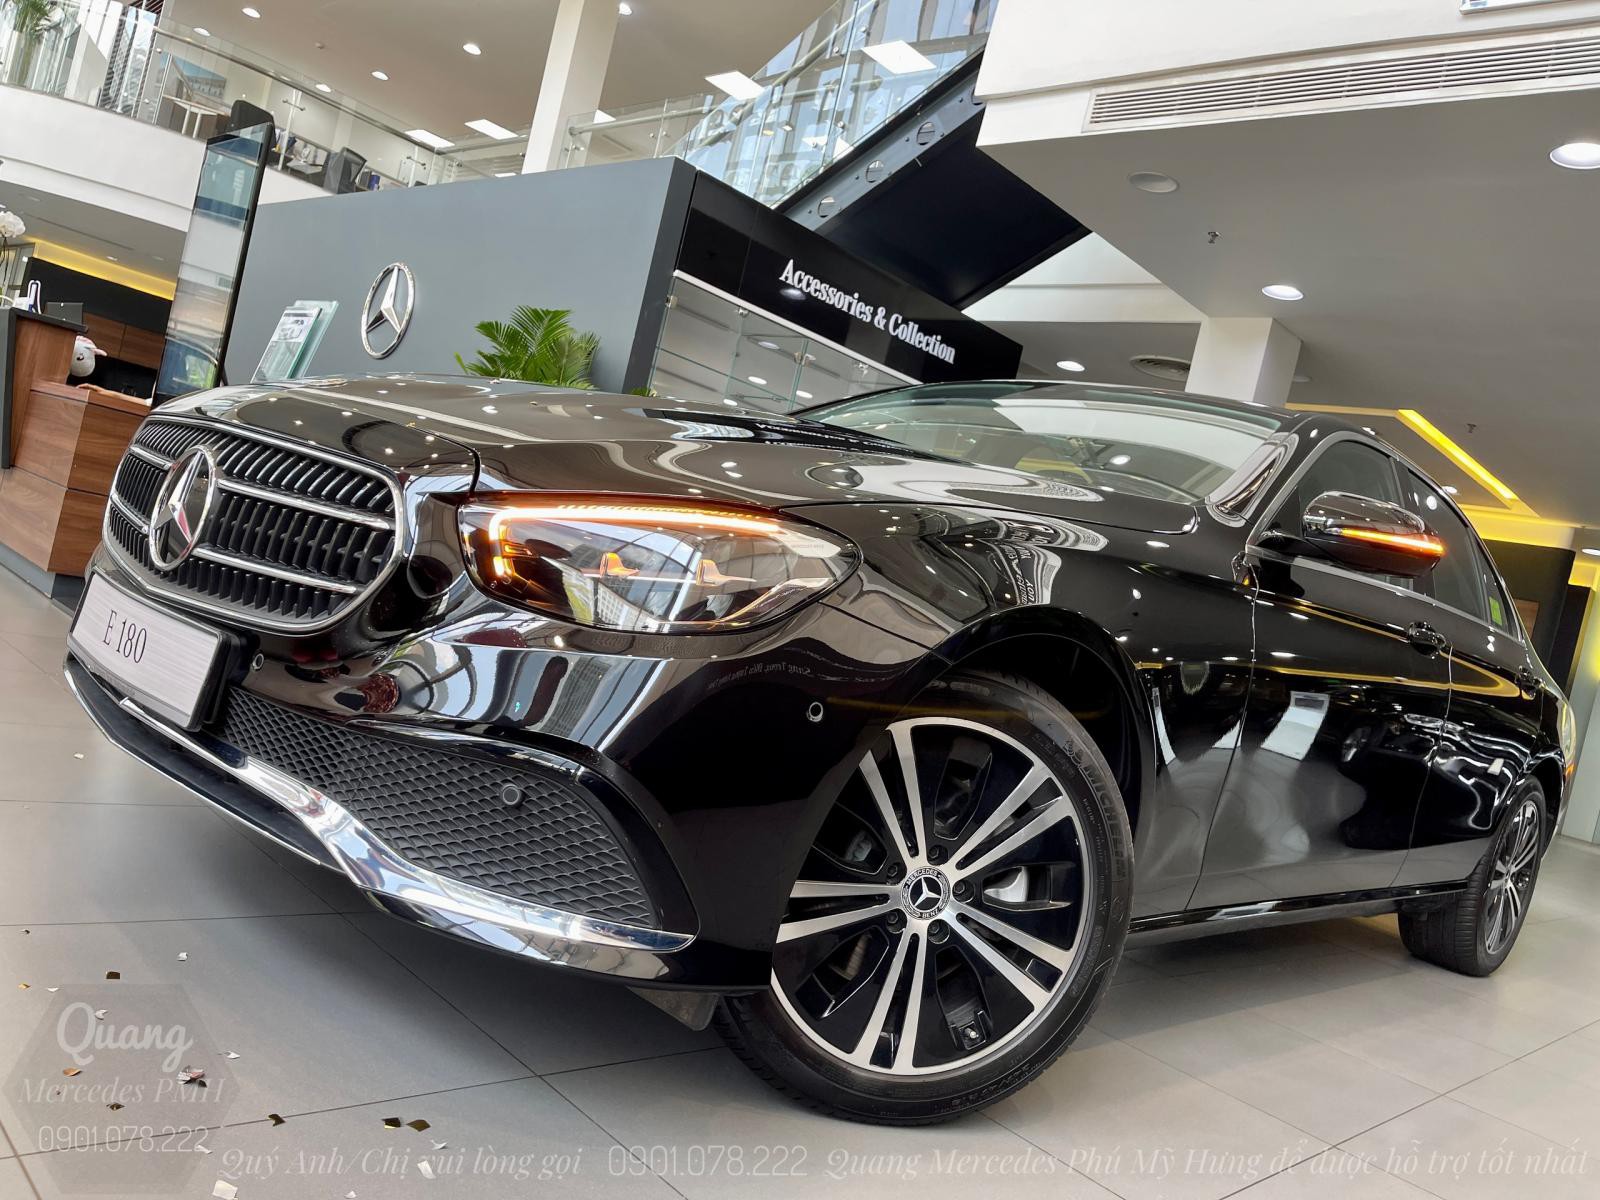 Mercedes E180 2022 Màu Đen - Cọc Sớm Giao Ngay Quận 1 - Trả góp tới 80% | Lãi suất 7.5%/năm - 0901 078 222